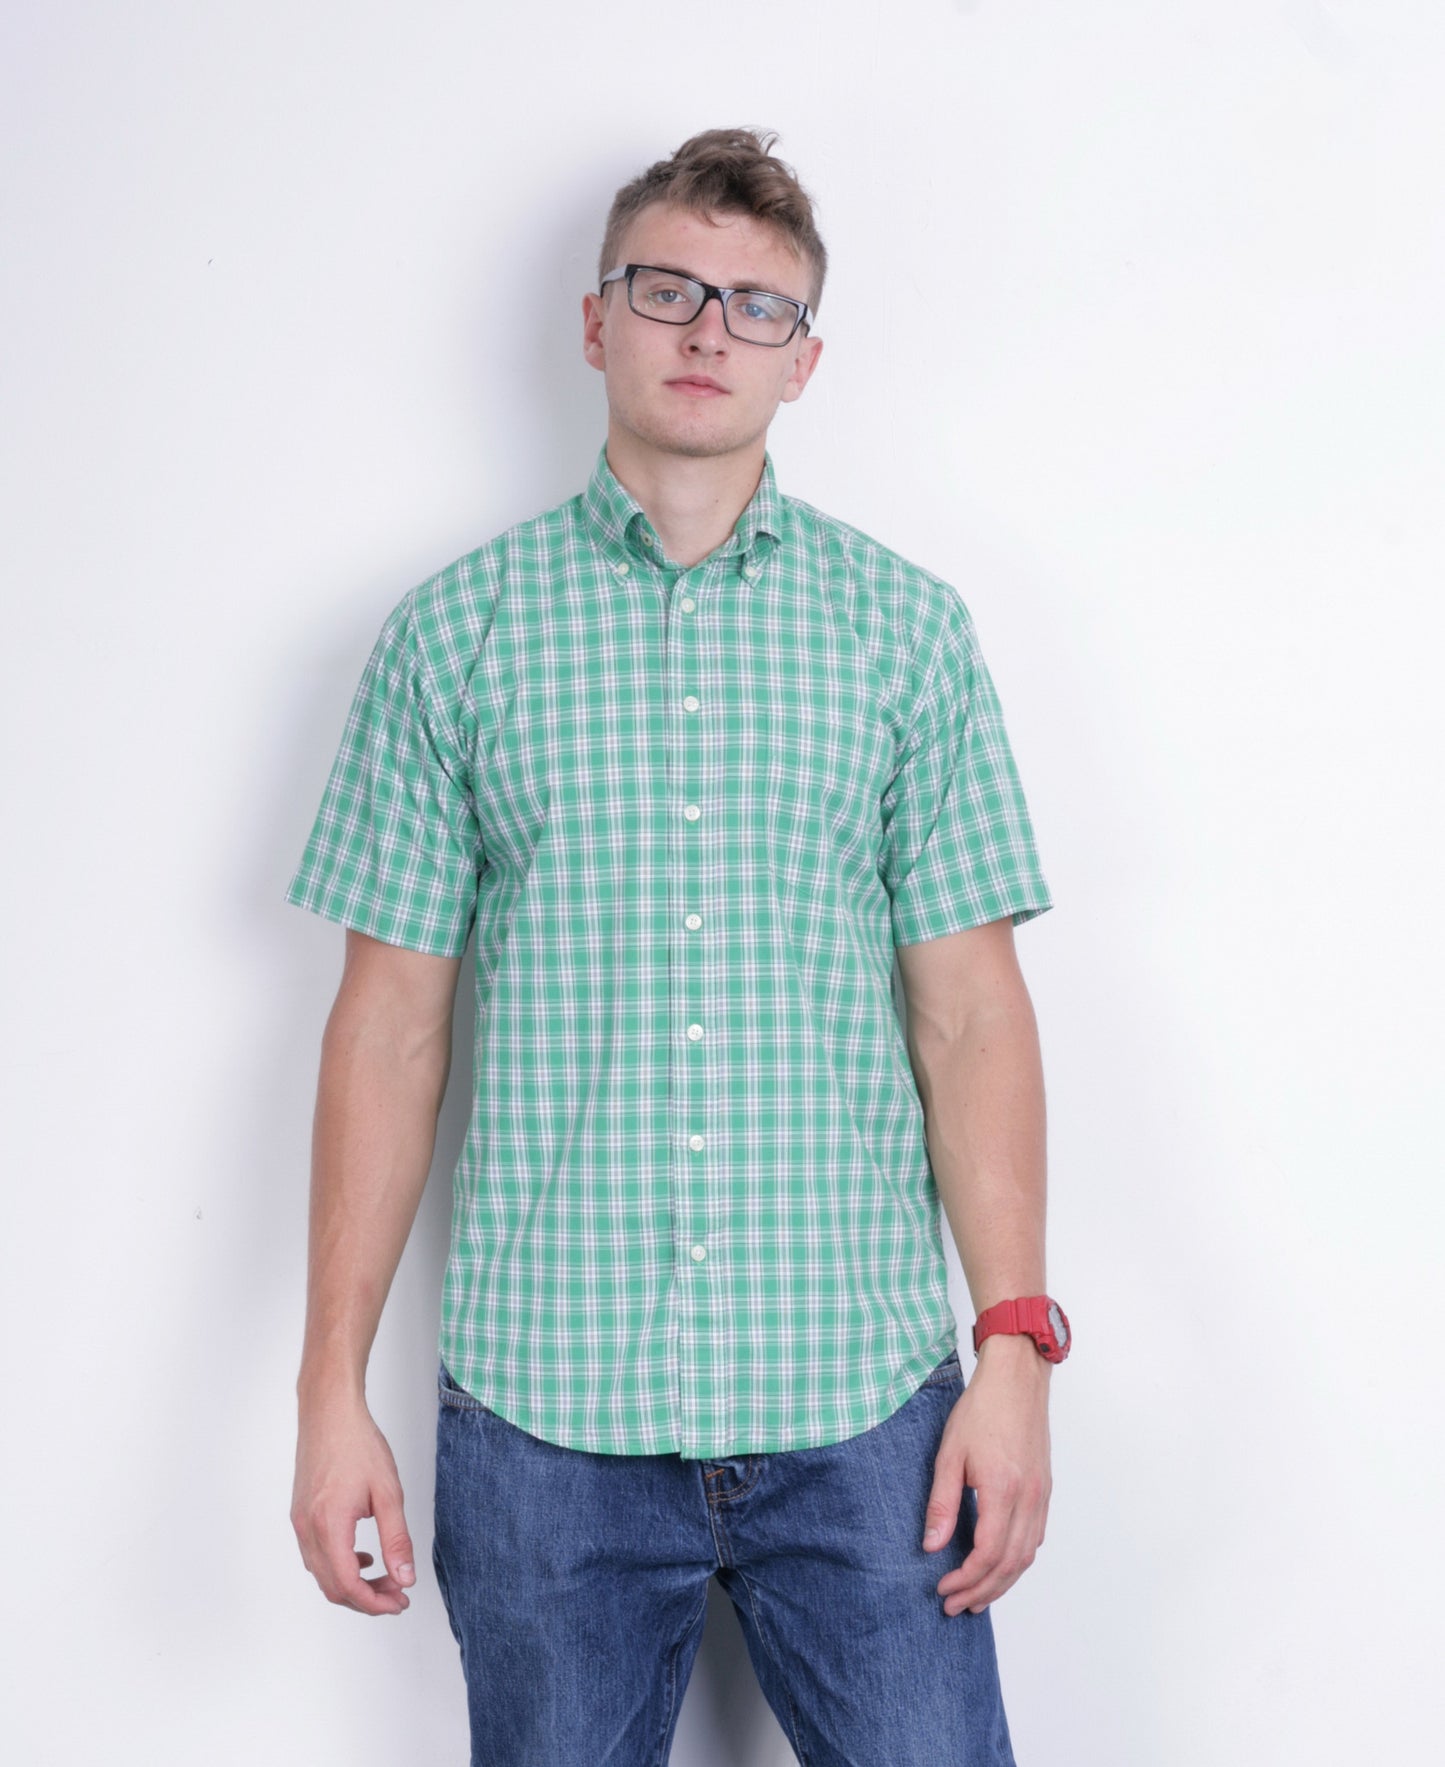 A.W. Dunmore Mens S Casual Shirt Green Check Cotton Short Sleeve - RetrospectClothes